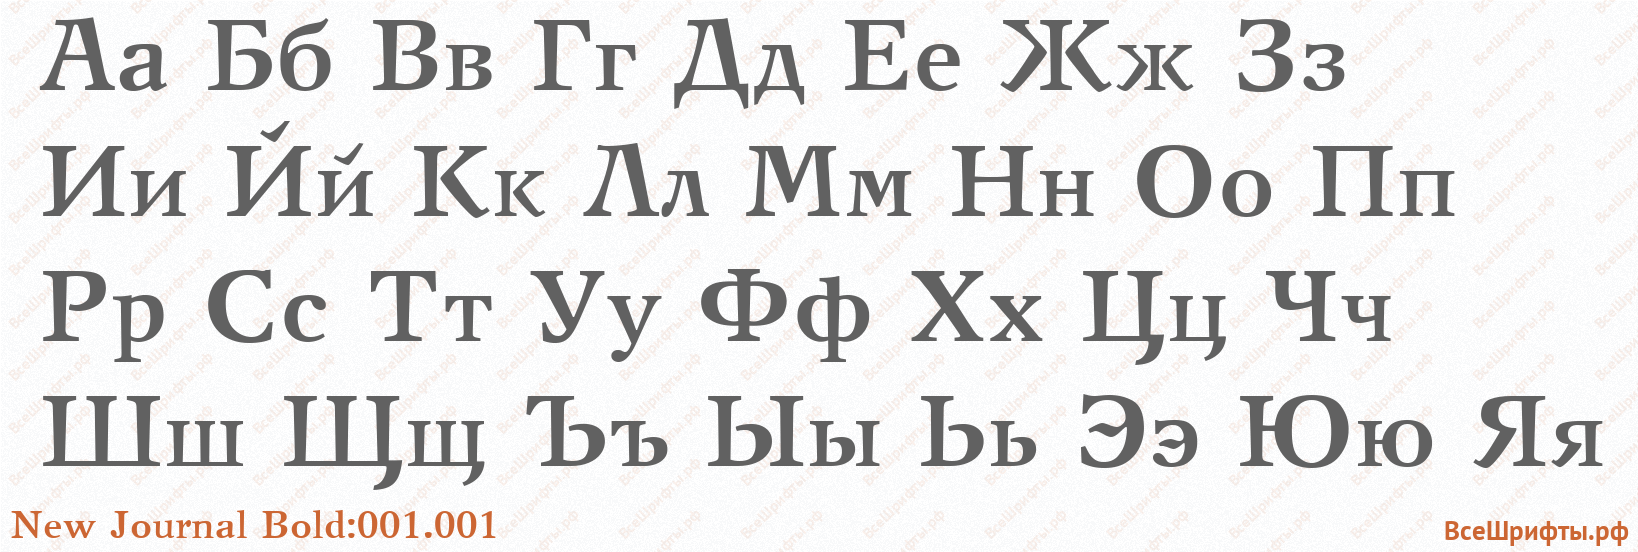 Шрифт New Journal Bold:001.001 с русскими буквами